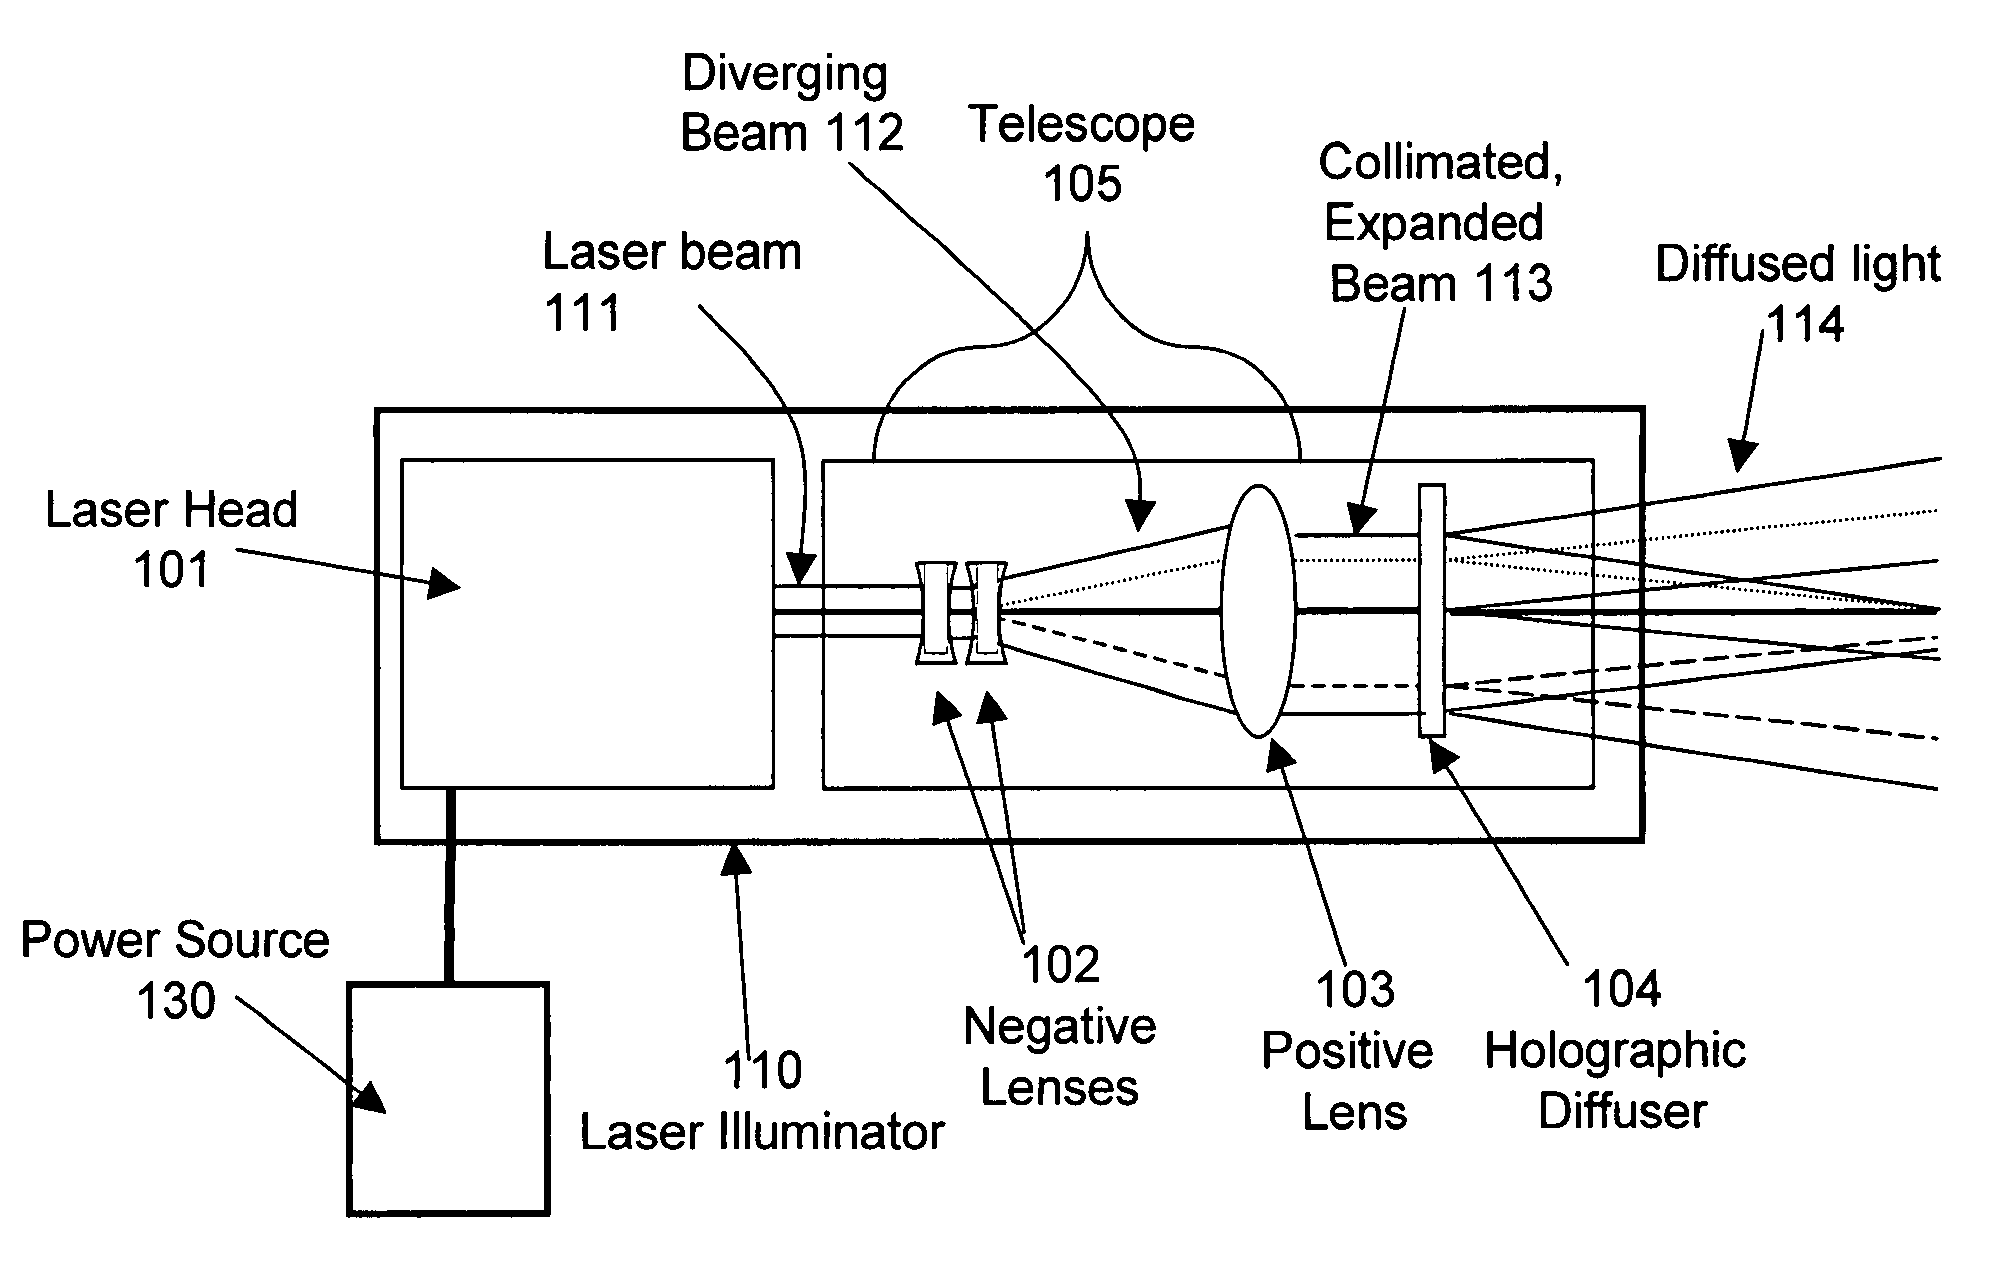 Extended source laser illuminator